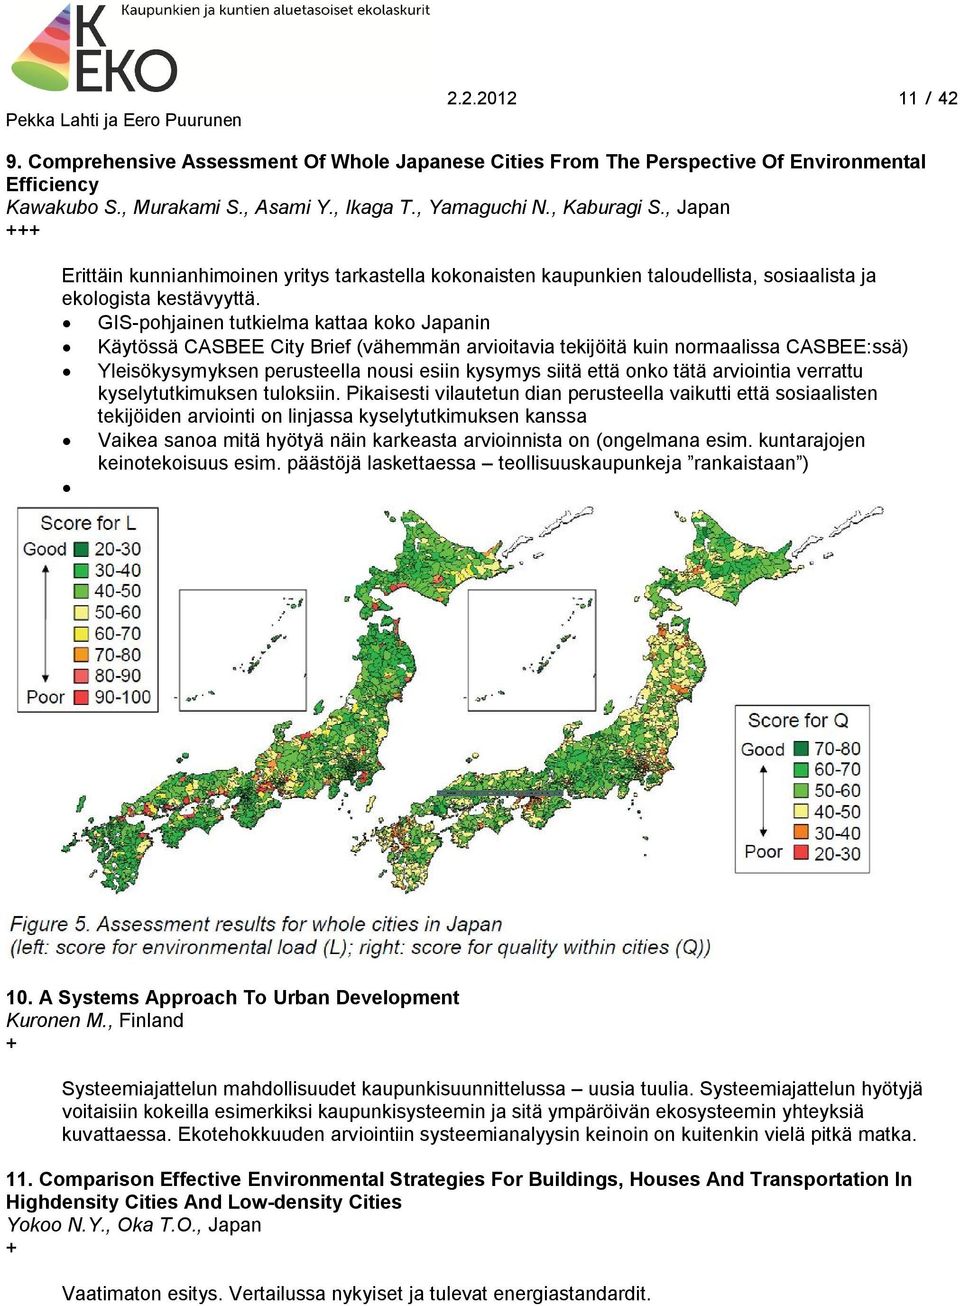 GIS-pohjainen tutkielma kattaa koko Japanin Käytössä CASBEE City Brief (vähemmän arvioitavia tekijöitä kuin normaalissa CASBEE:ssä) Yleisökysymyksen perusteella nousi esiin kysymys siitä että onko